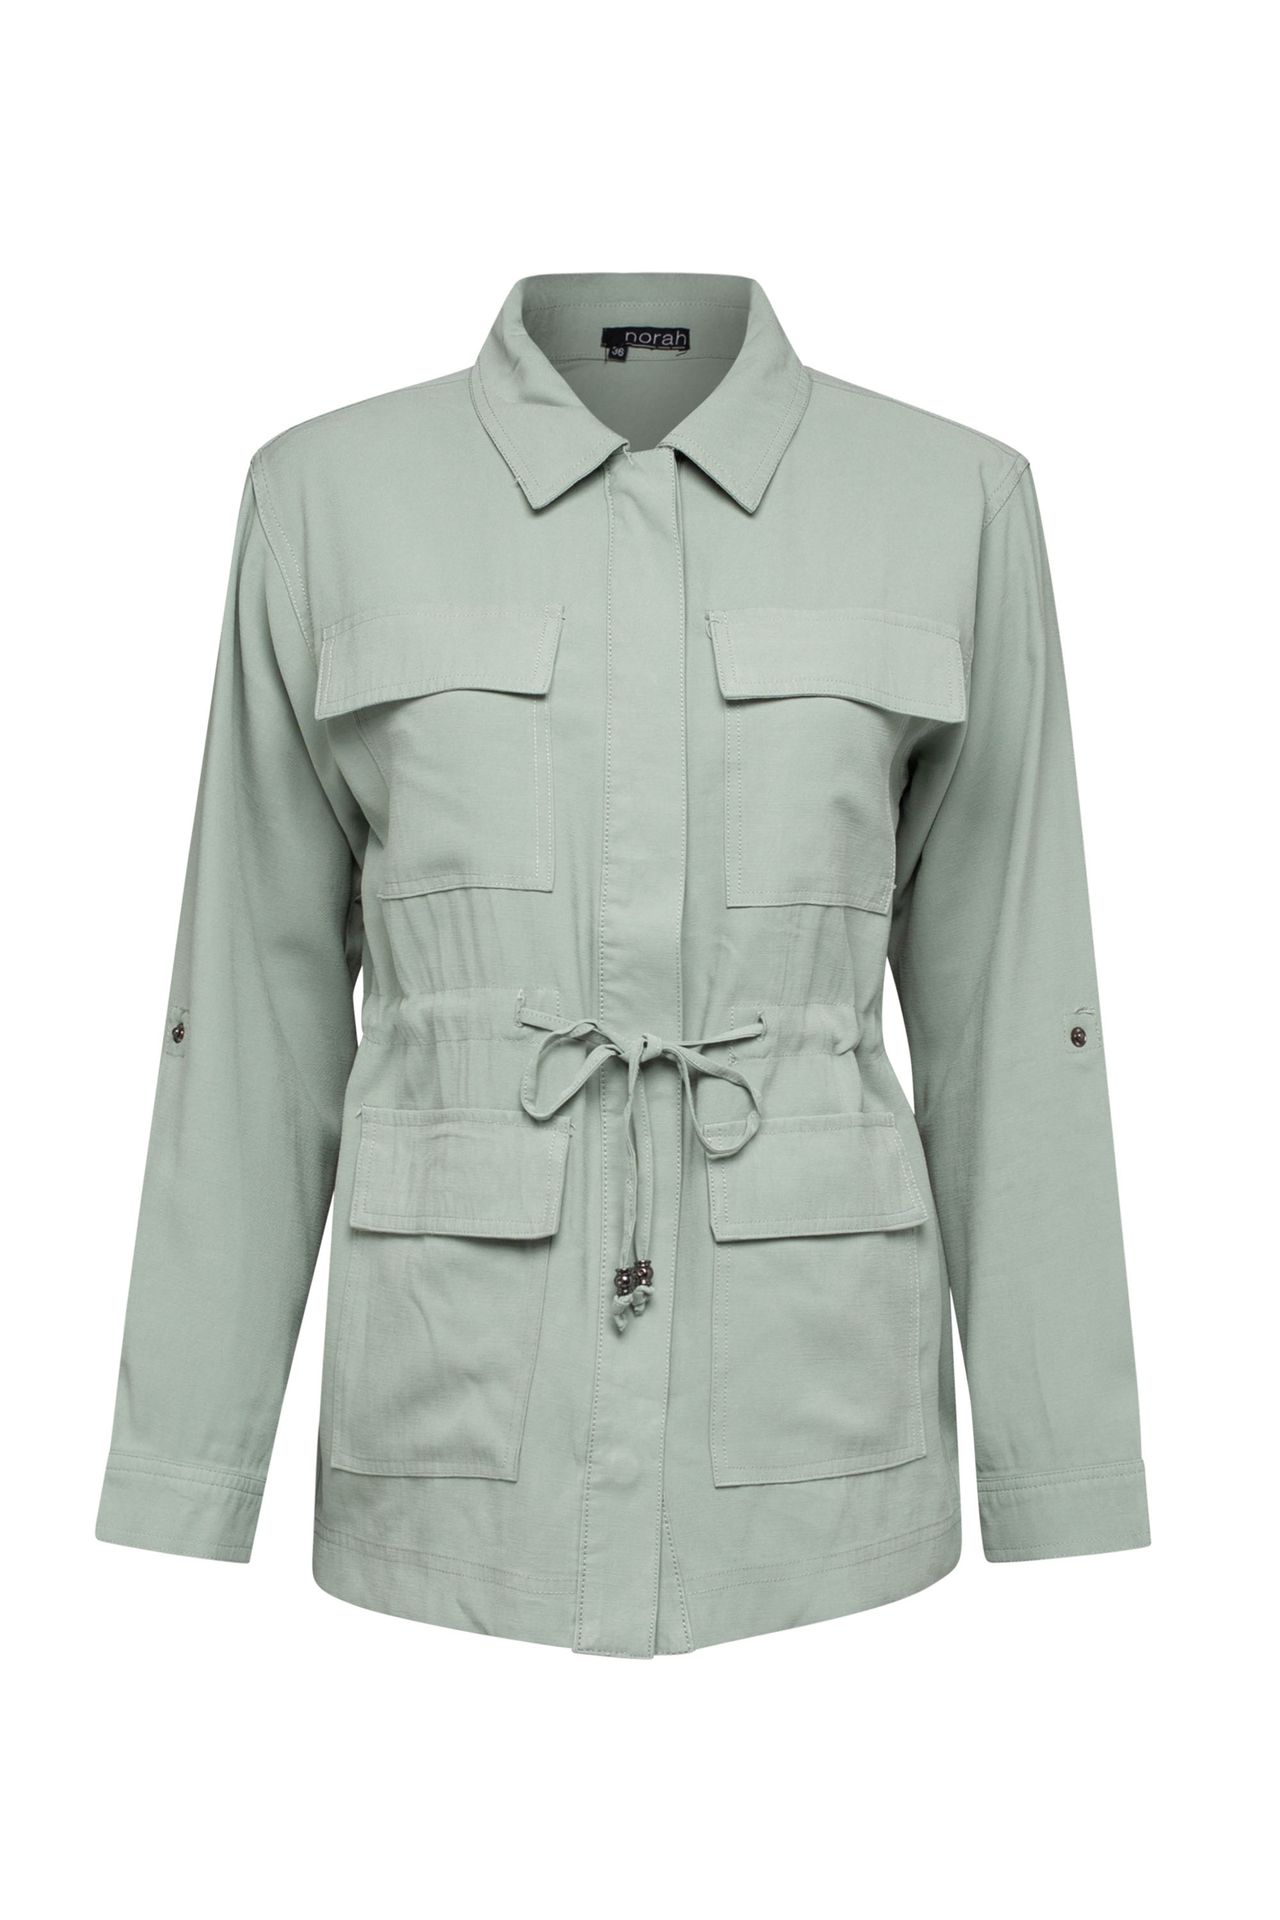 Norah Utility jacket grijs groen grey green 209824-053